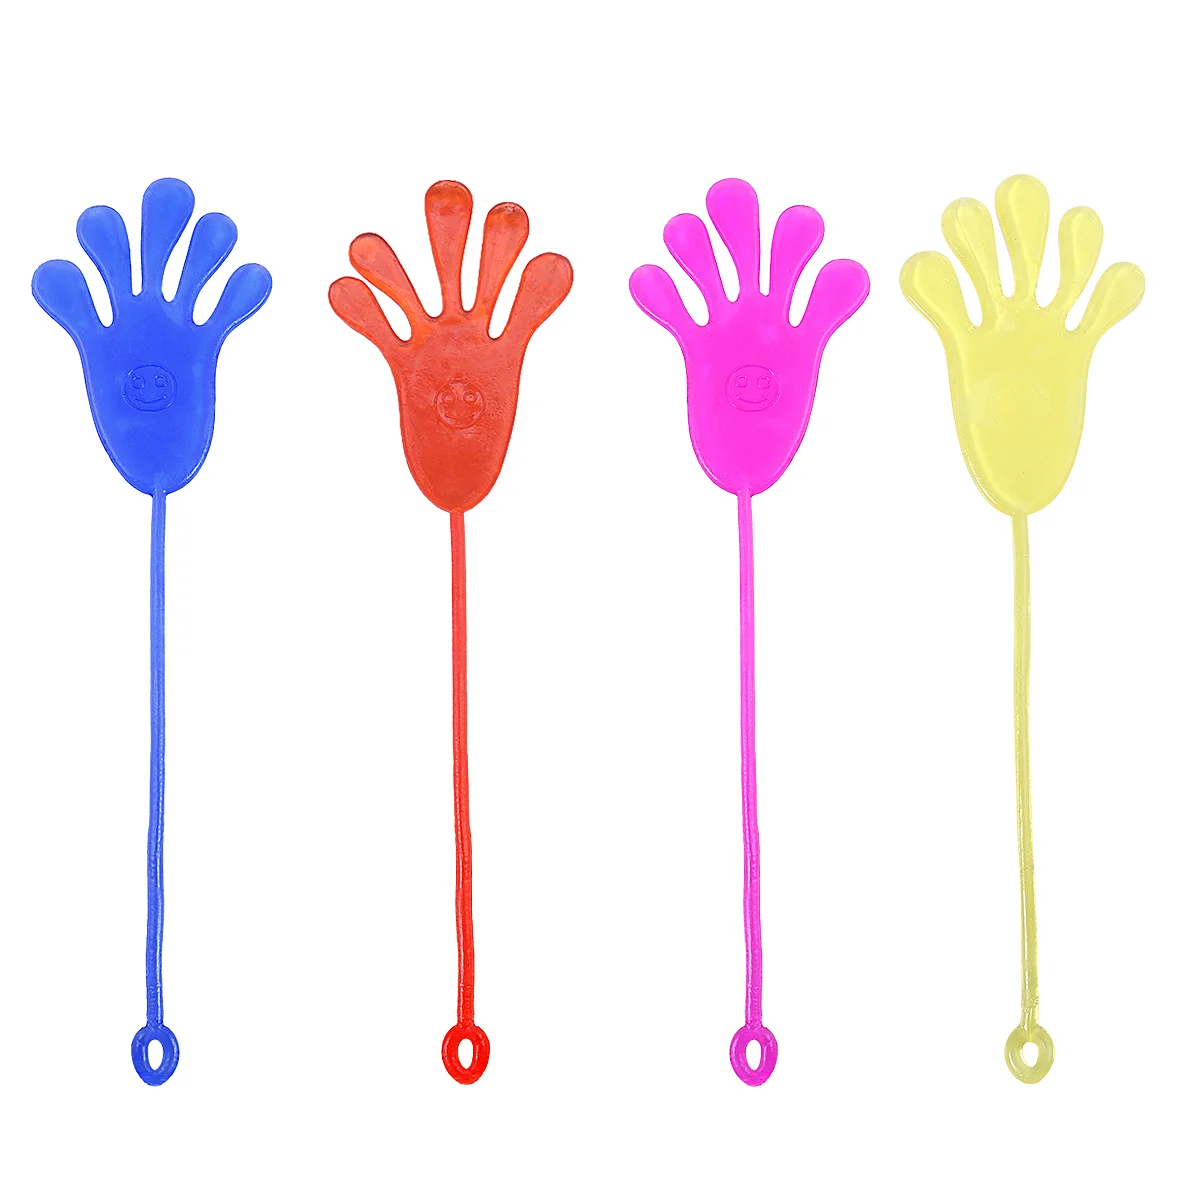 

Липкие руки стрейч руки детские игрушки для скалолазания подарки для вечеринки детские клейкие руки для шлепания ностальгия объемные липк...